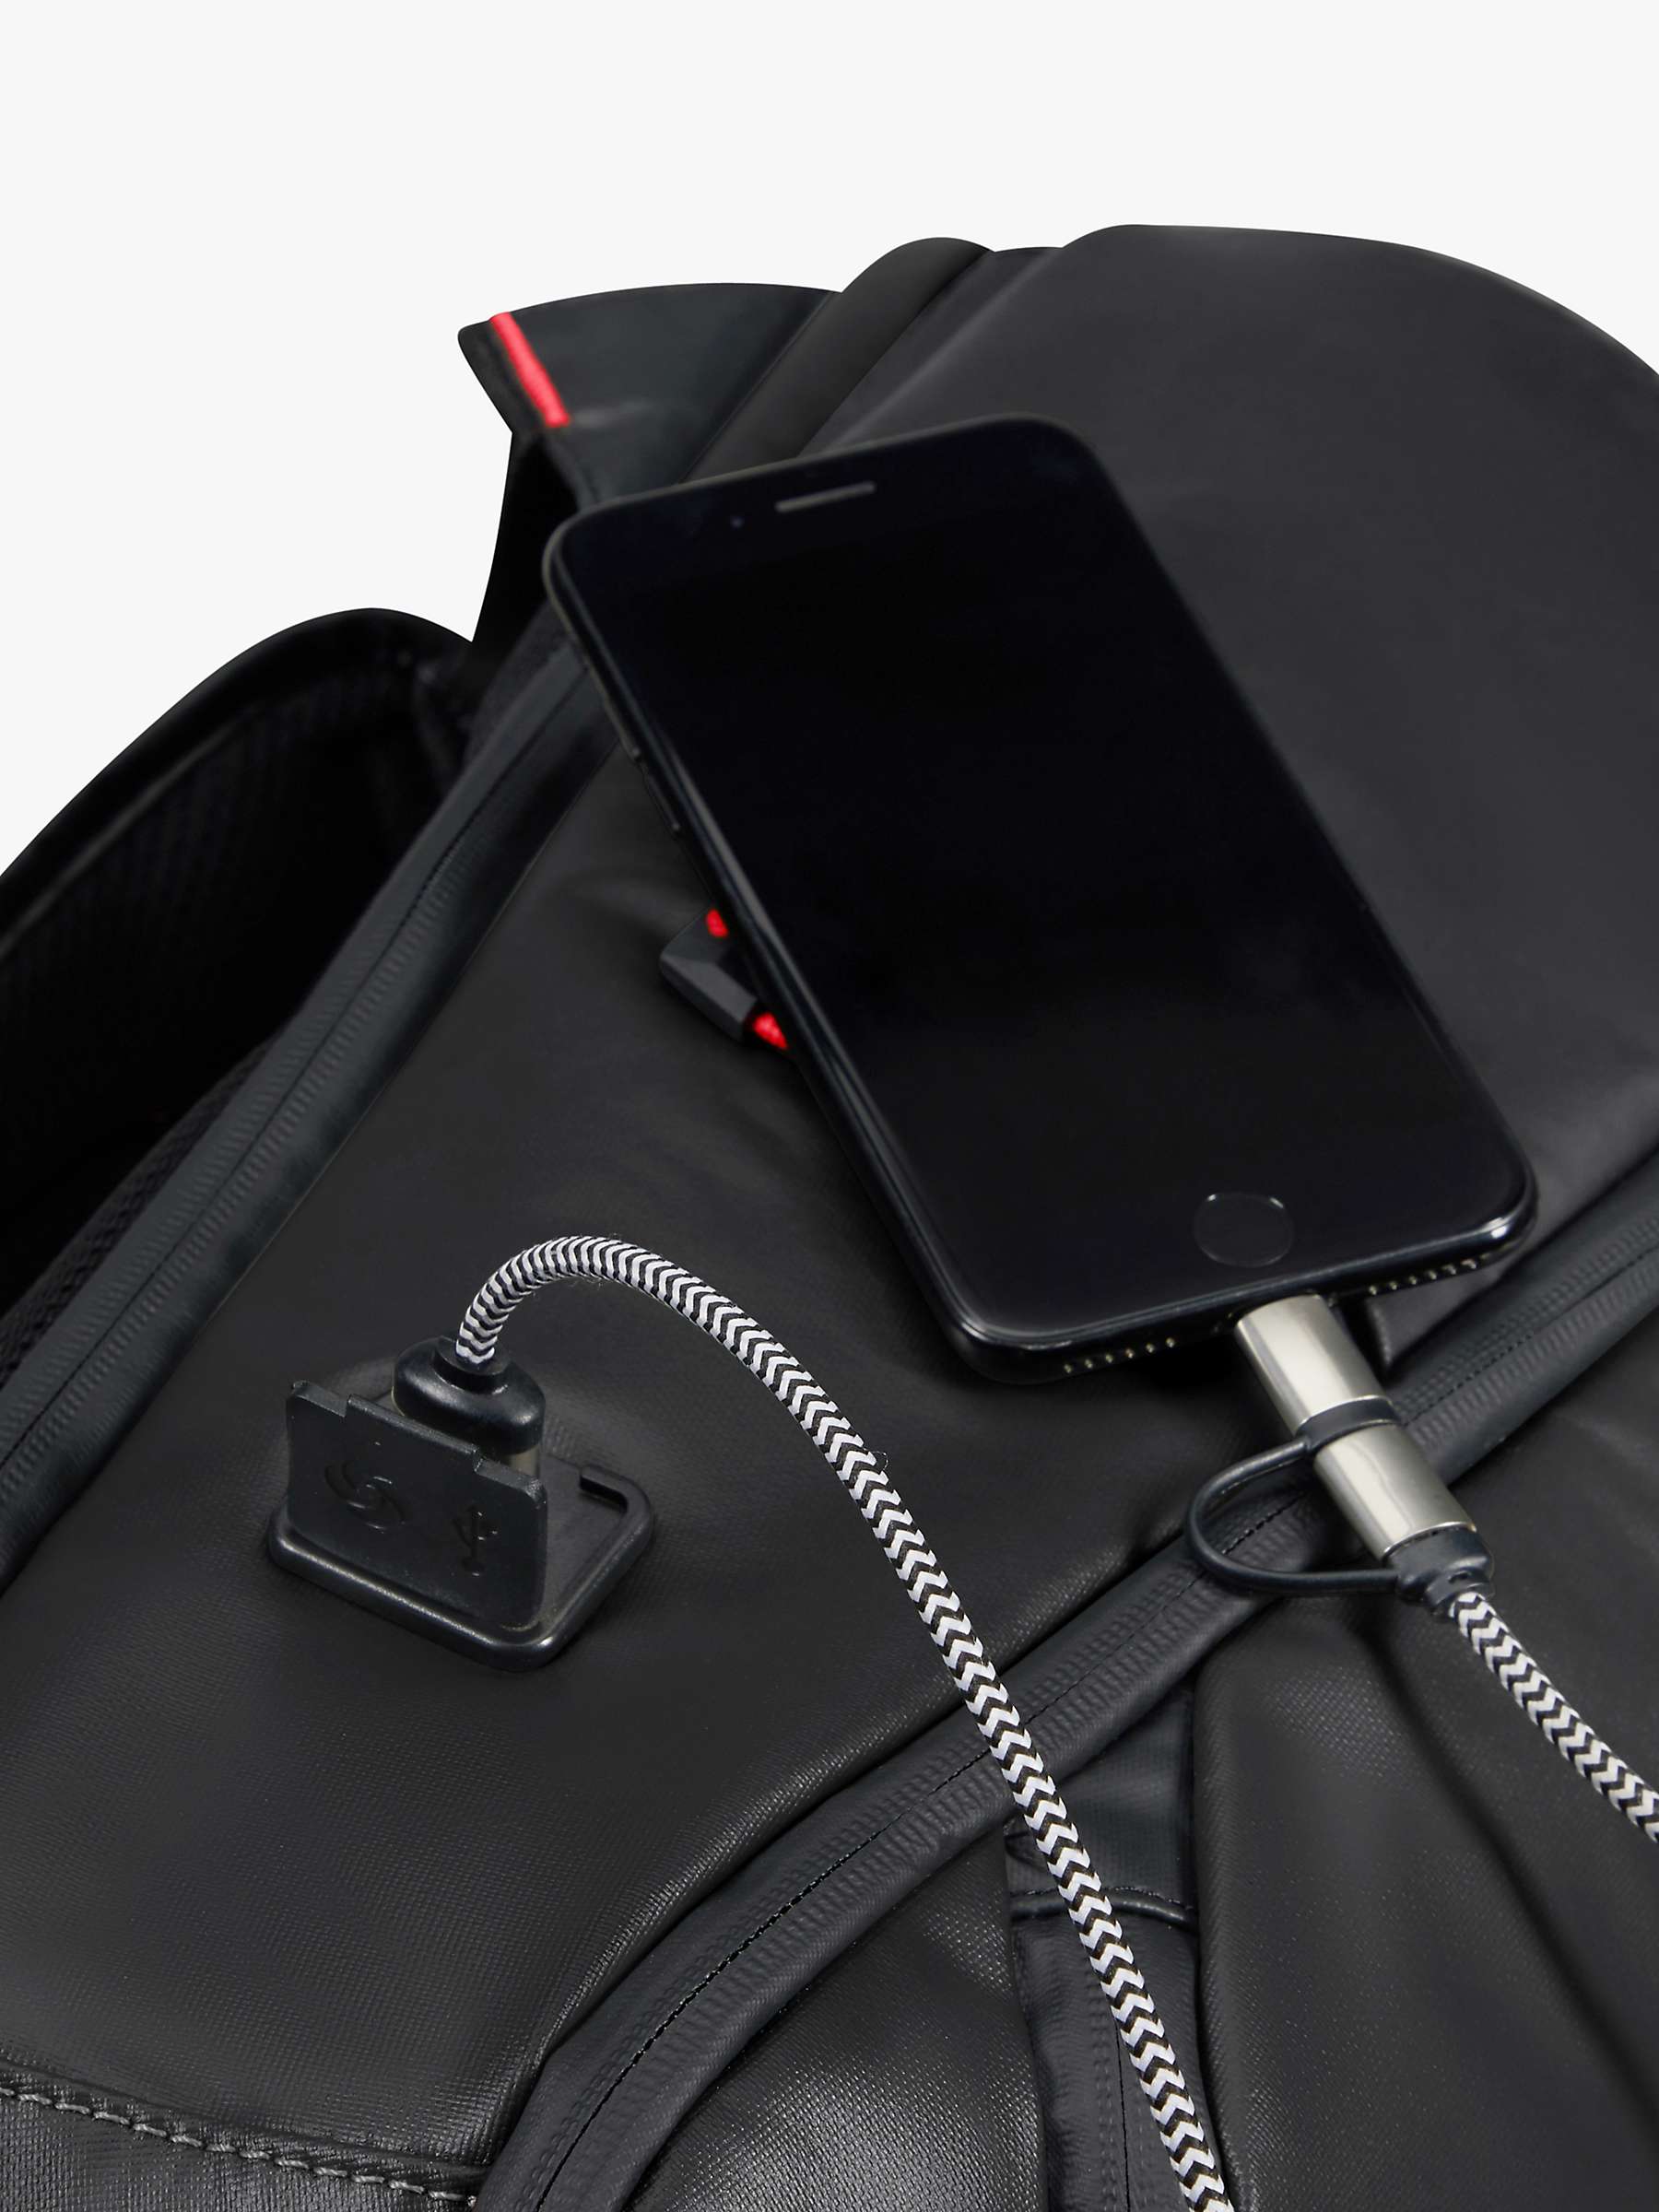 Buy Samsonite Ecodiver 15.6" USB Laptop Backpack Online at johnlewis.com